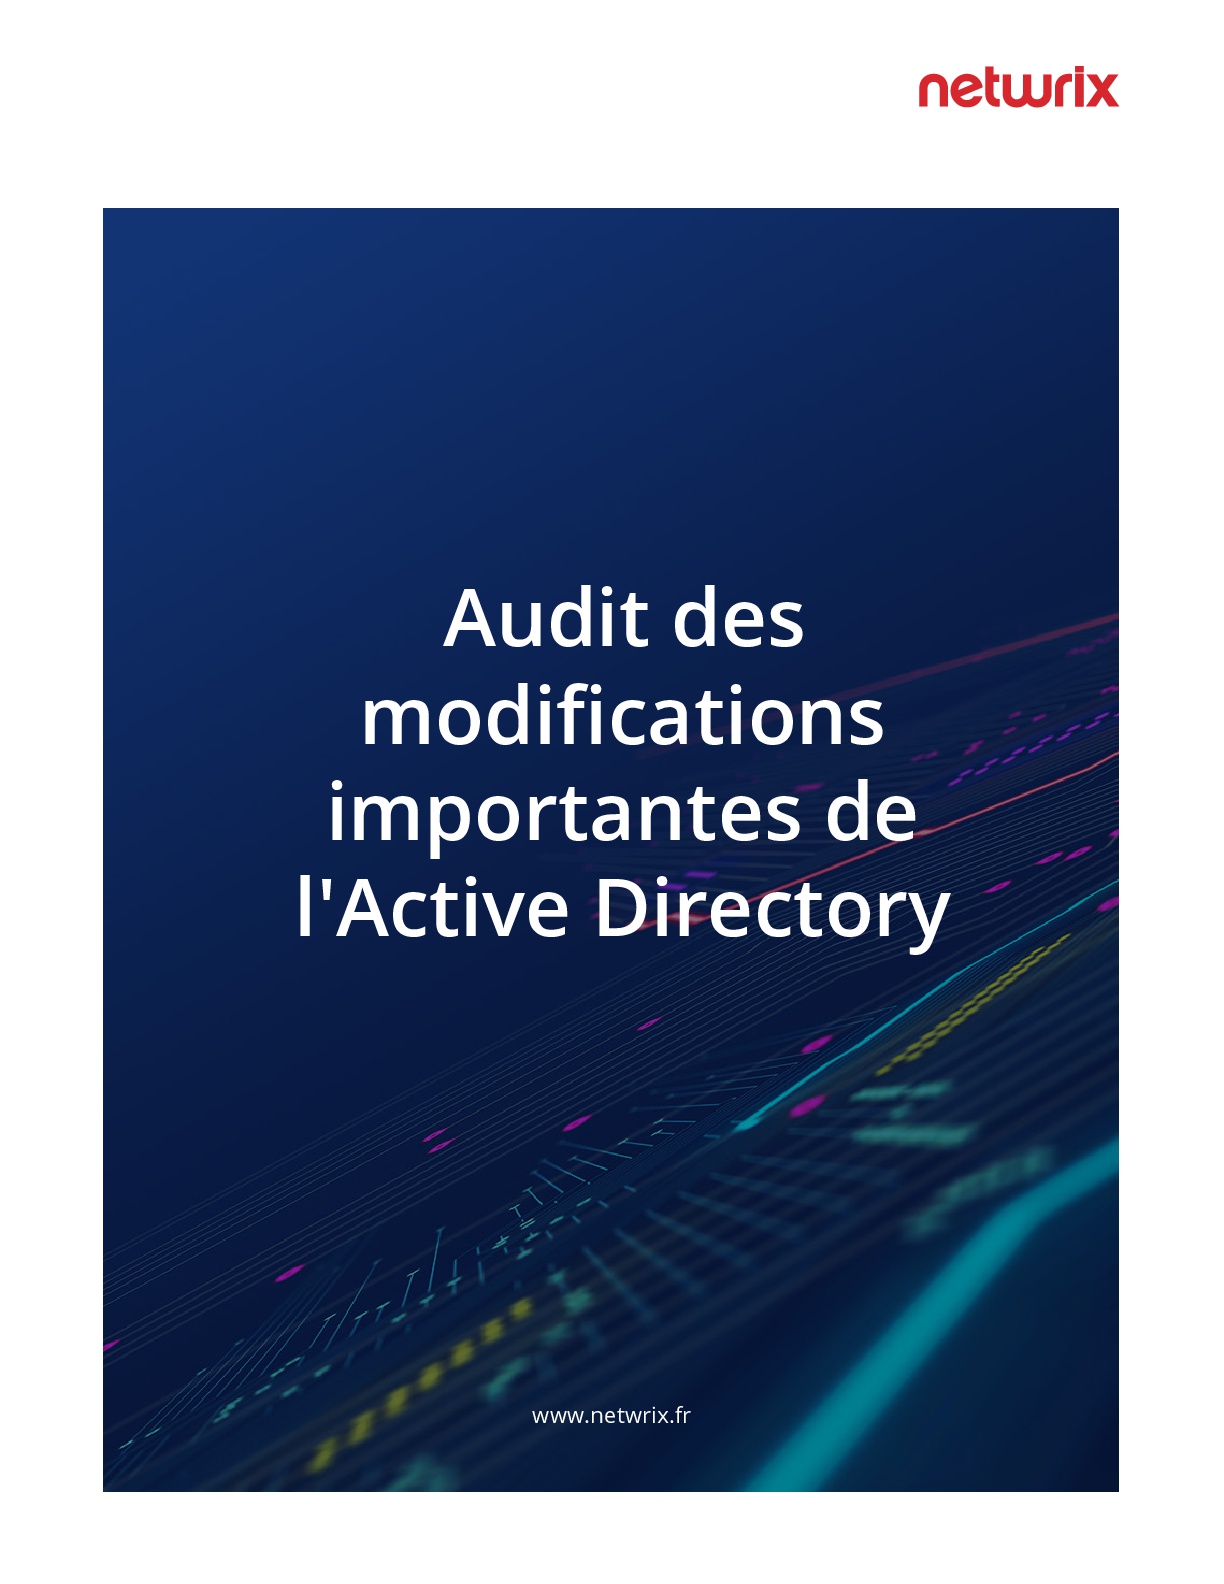 Audit des modifications importantes de l'Active Directory